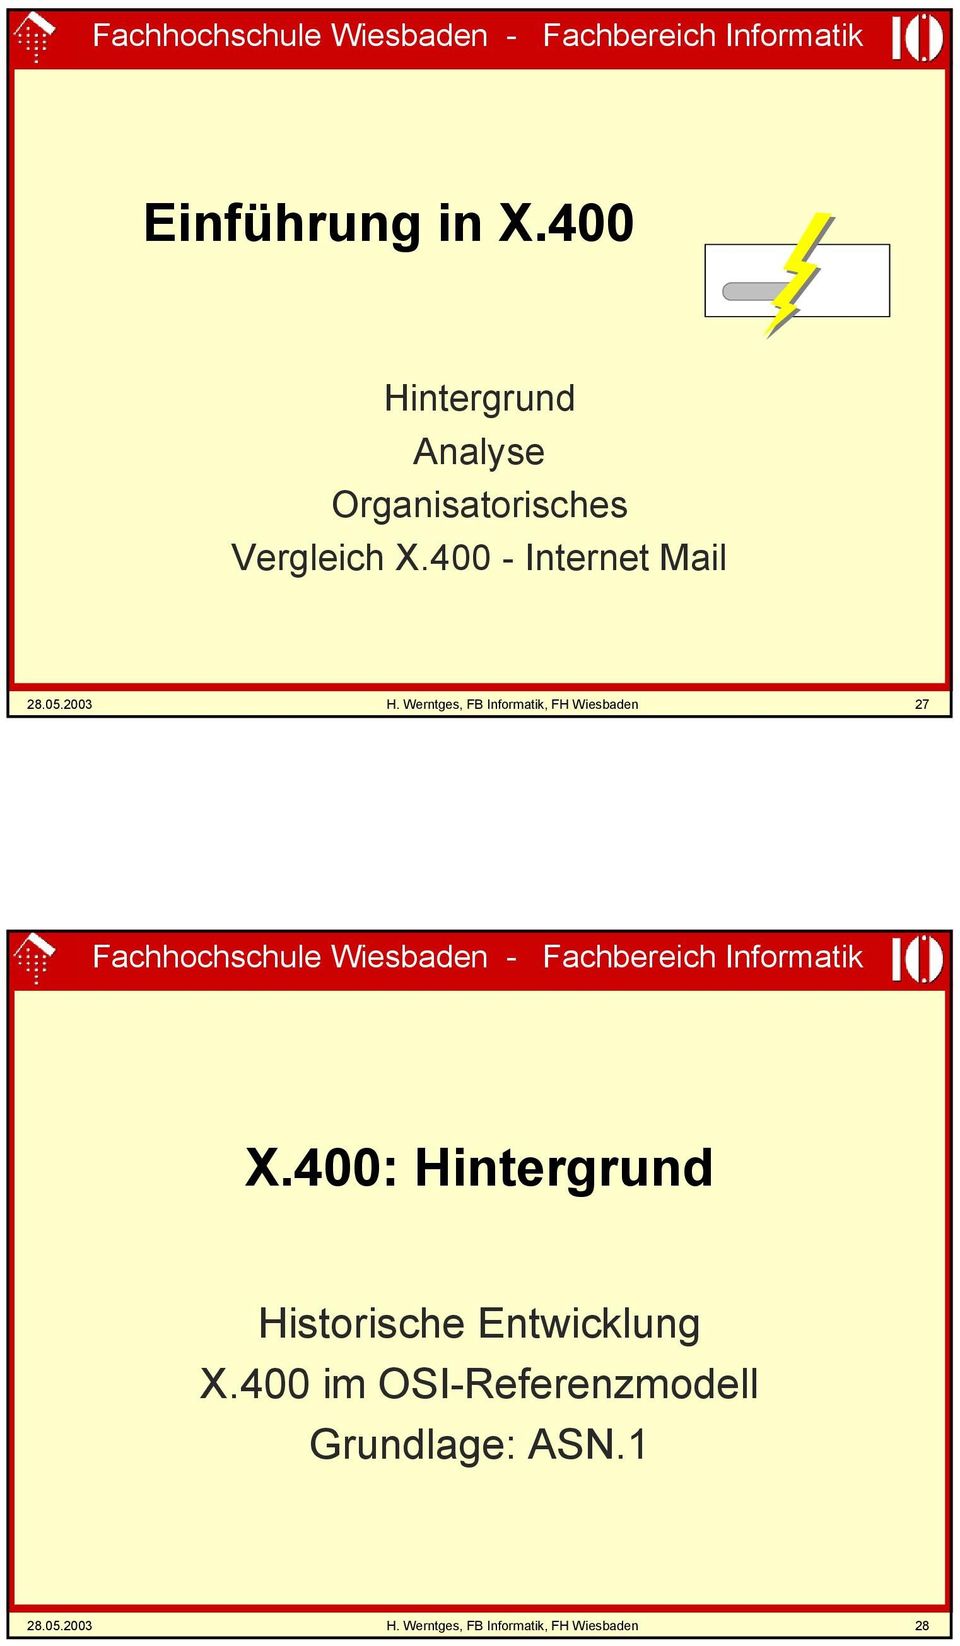 Werntges, FB Informatik, FH Wiesbaden 27 Fachhochschule Wiesbaden - Fachbereich Informatik X.